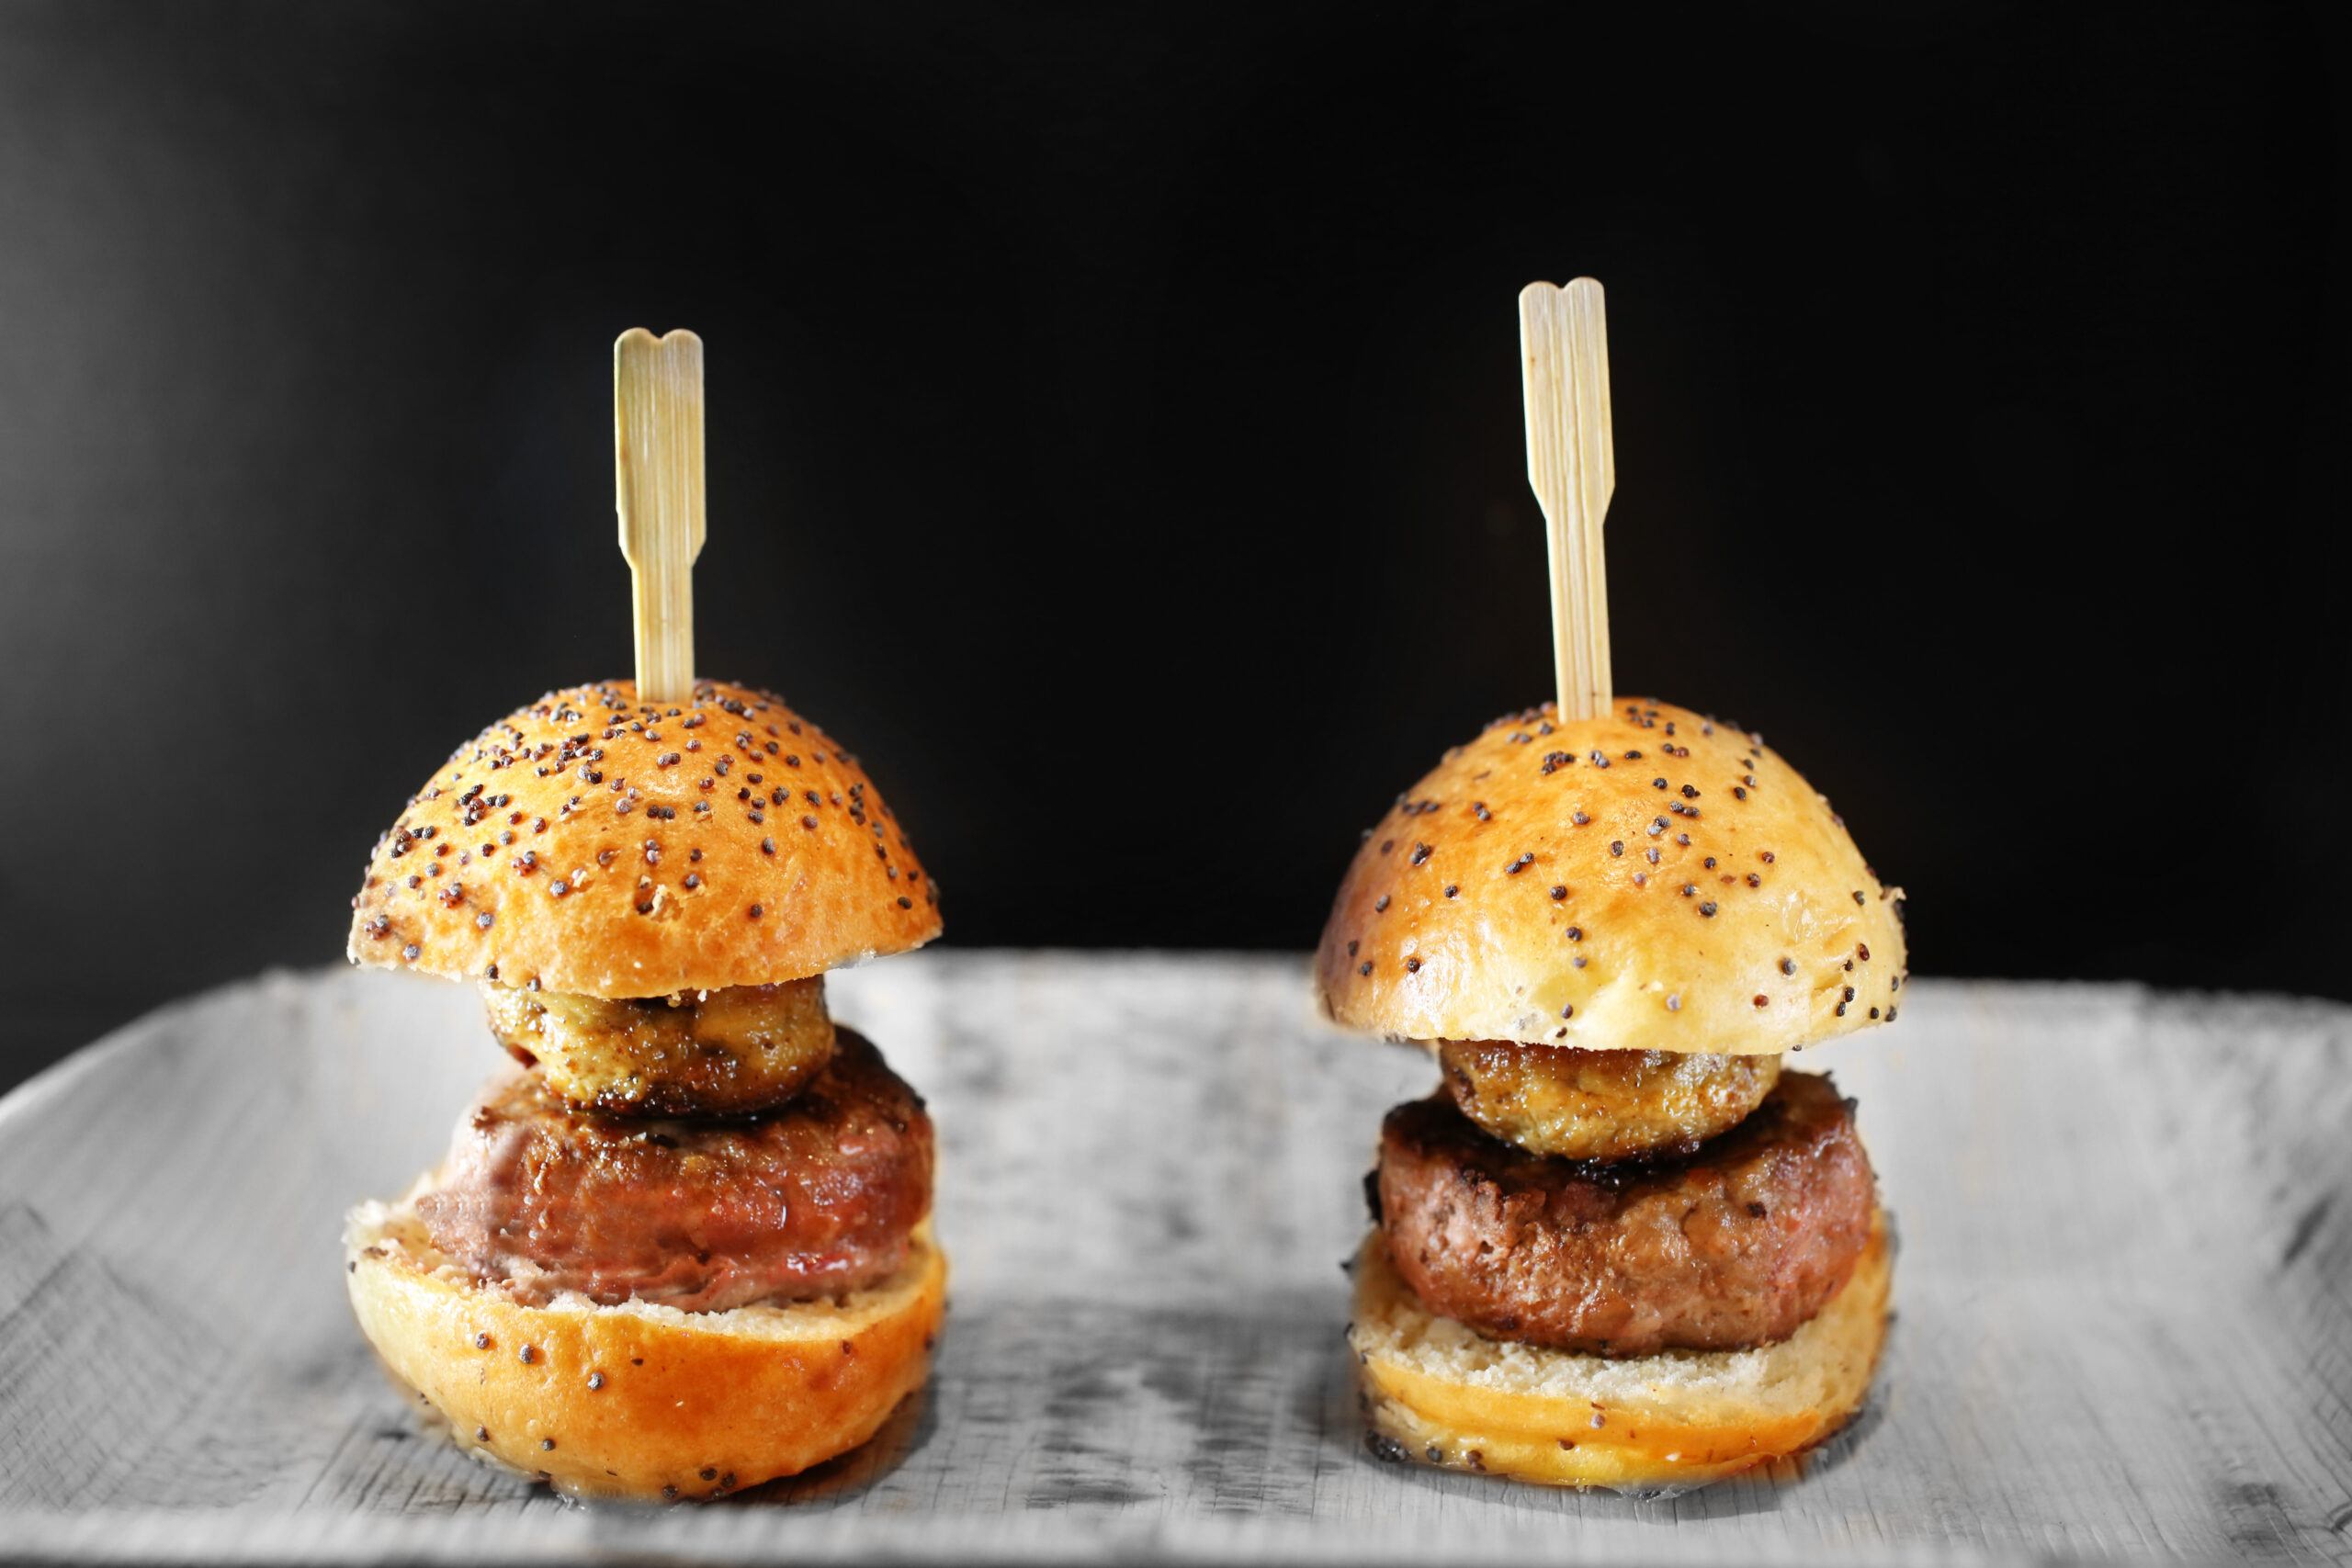 Kits maxi et mini burgers au foie gras